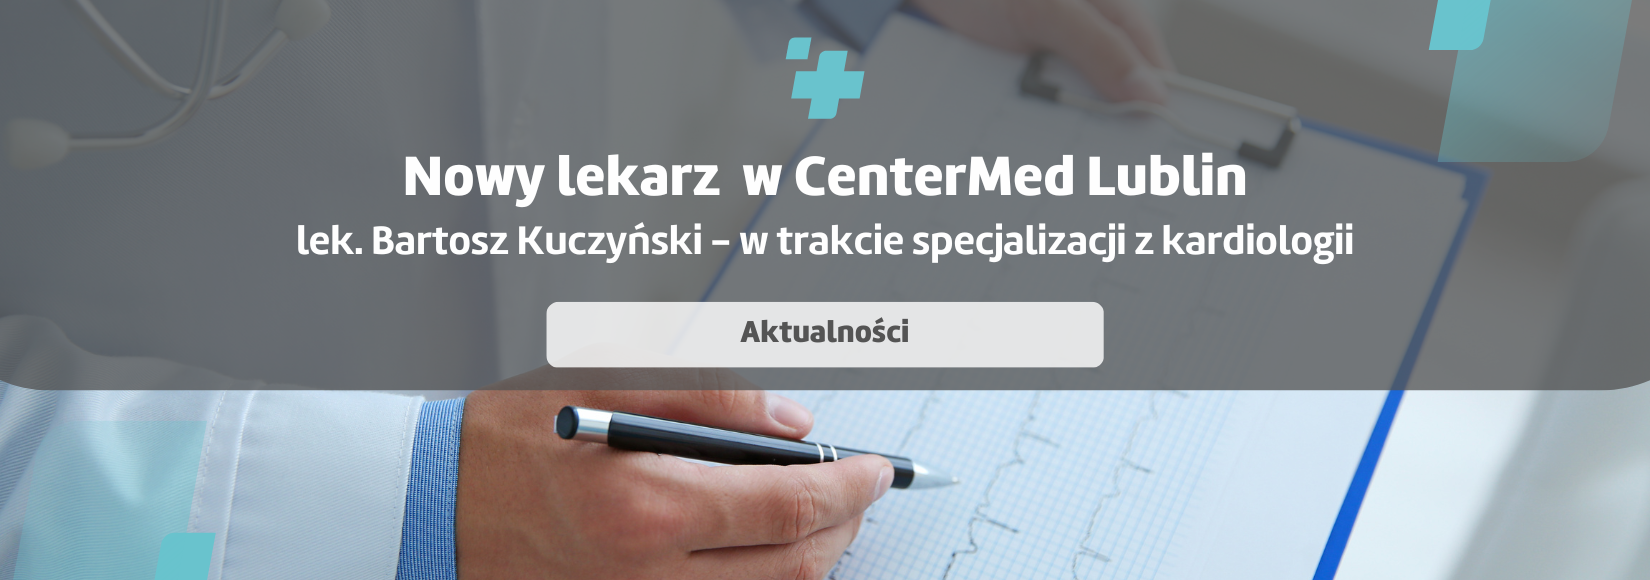 Nowy lekarz w Poradni kardiologicznej w Lublinie